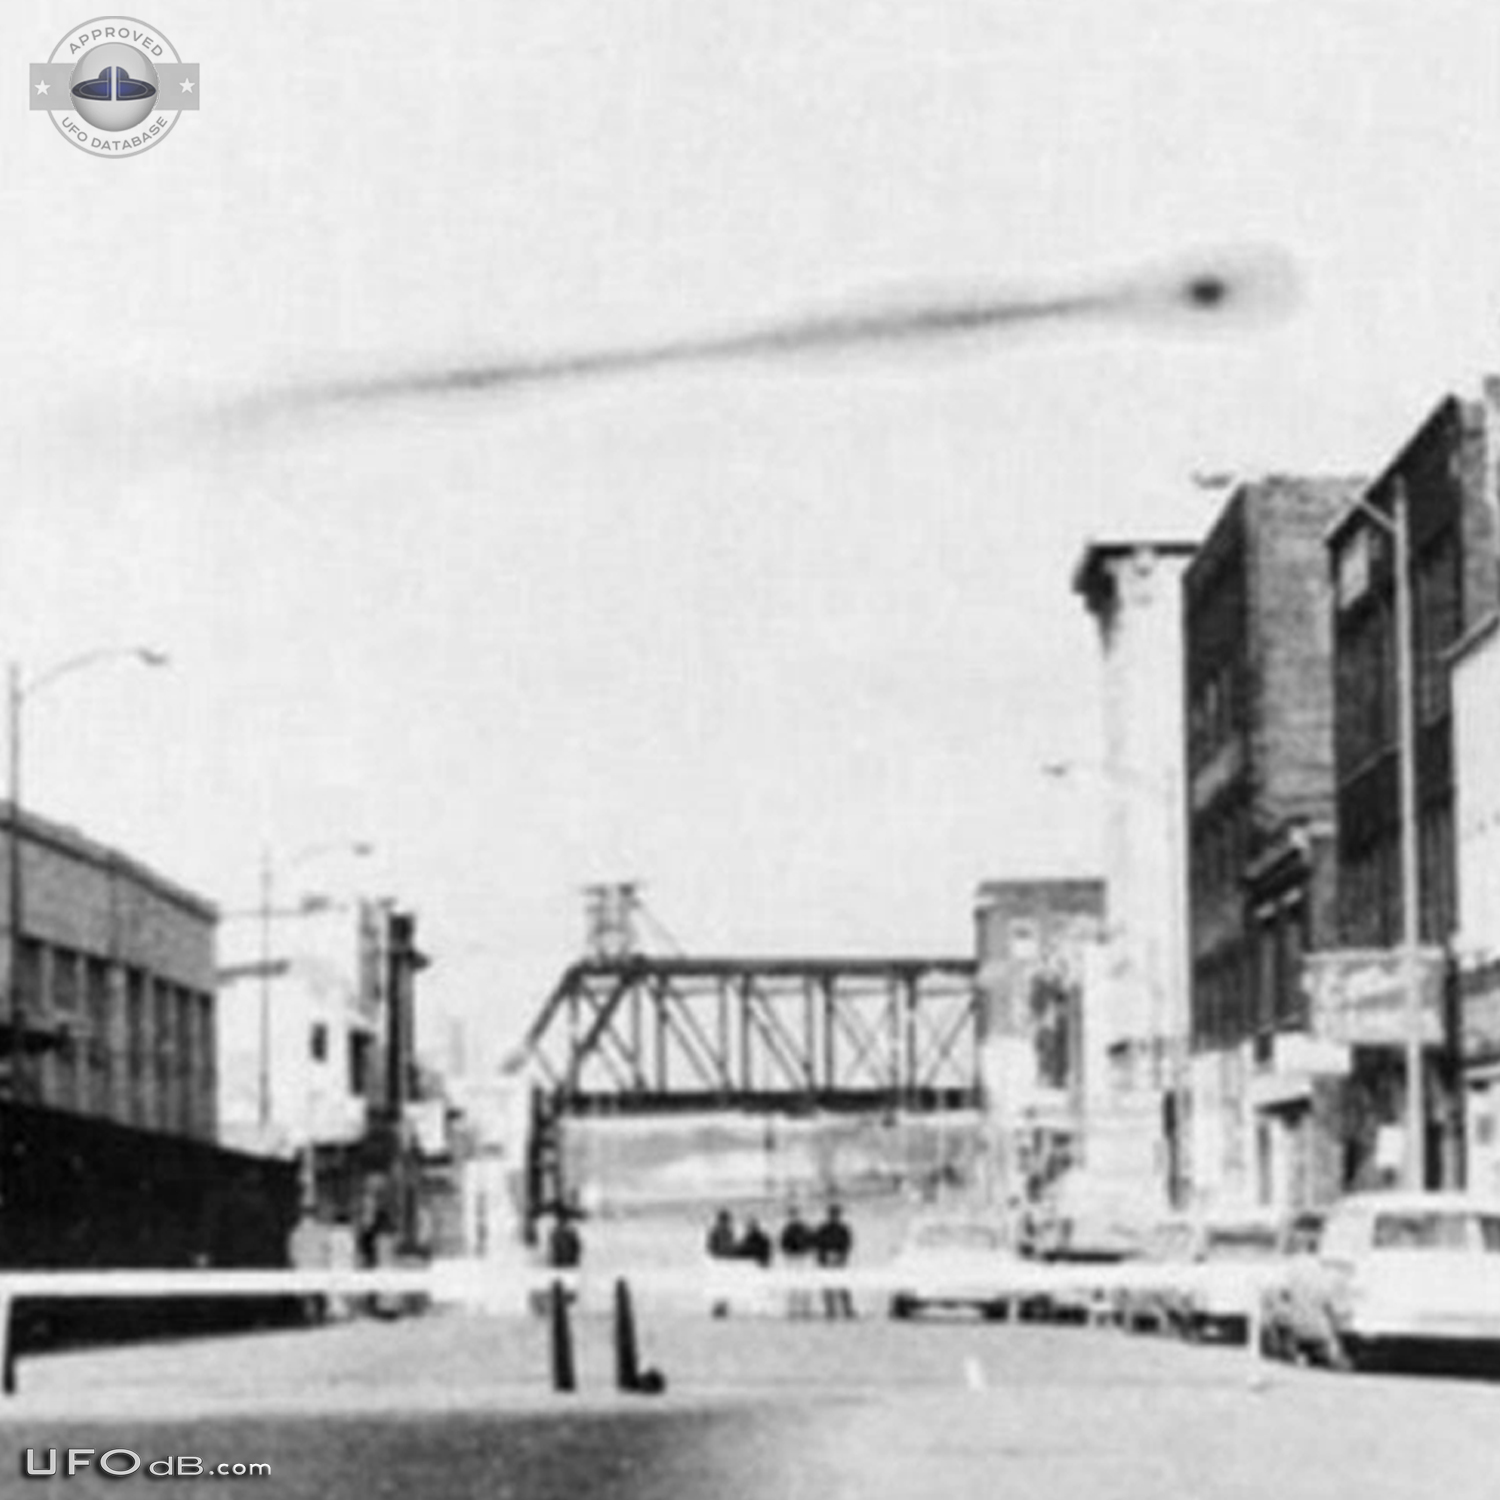 CIA Declassified UFO picture of 1965 in Omaha, Nebraska USA UFO Picture #631-4